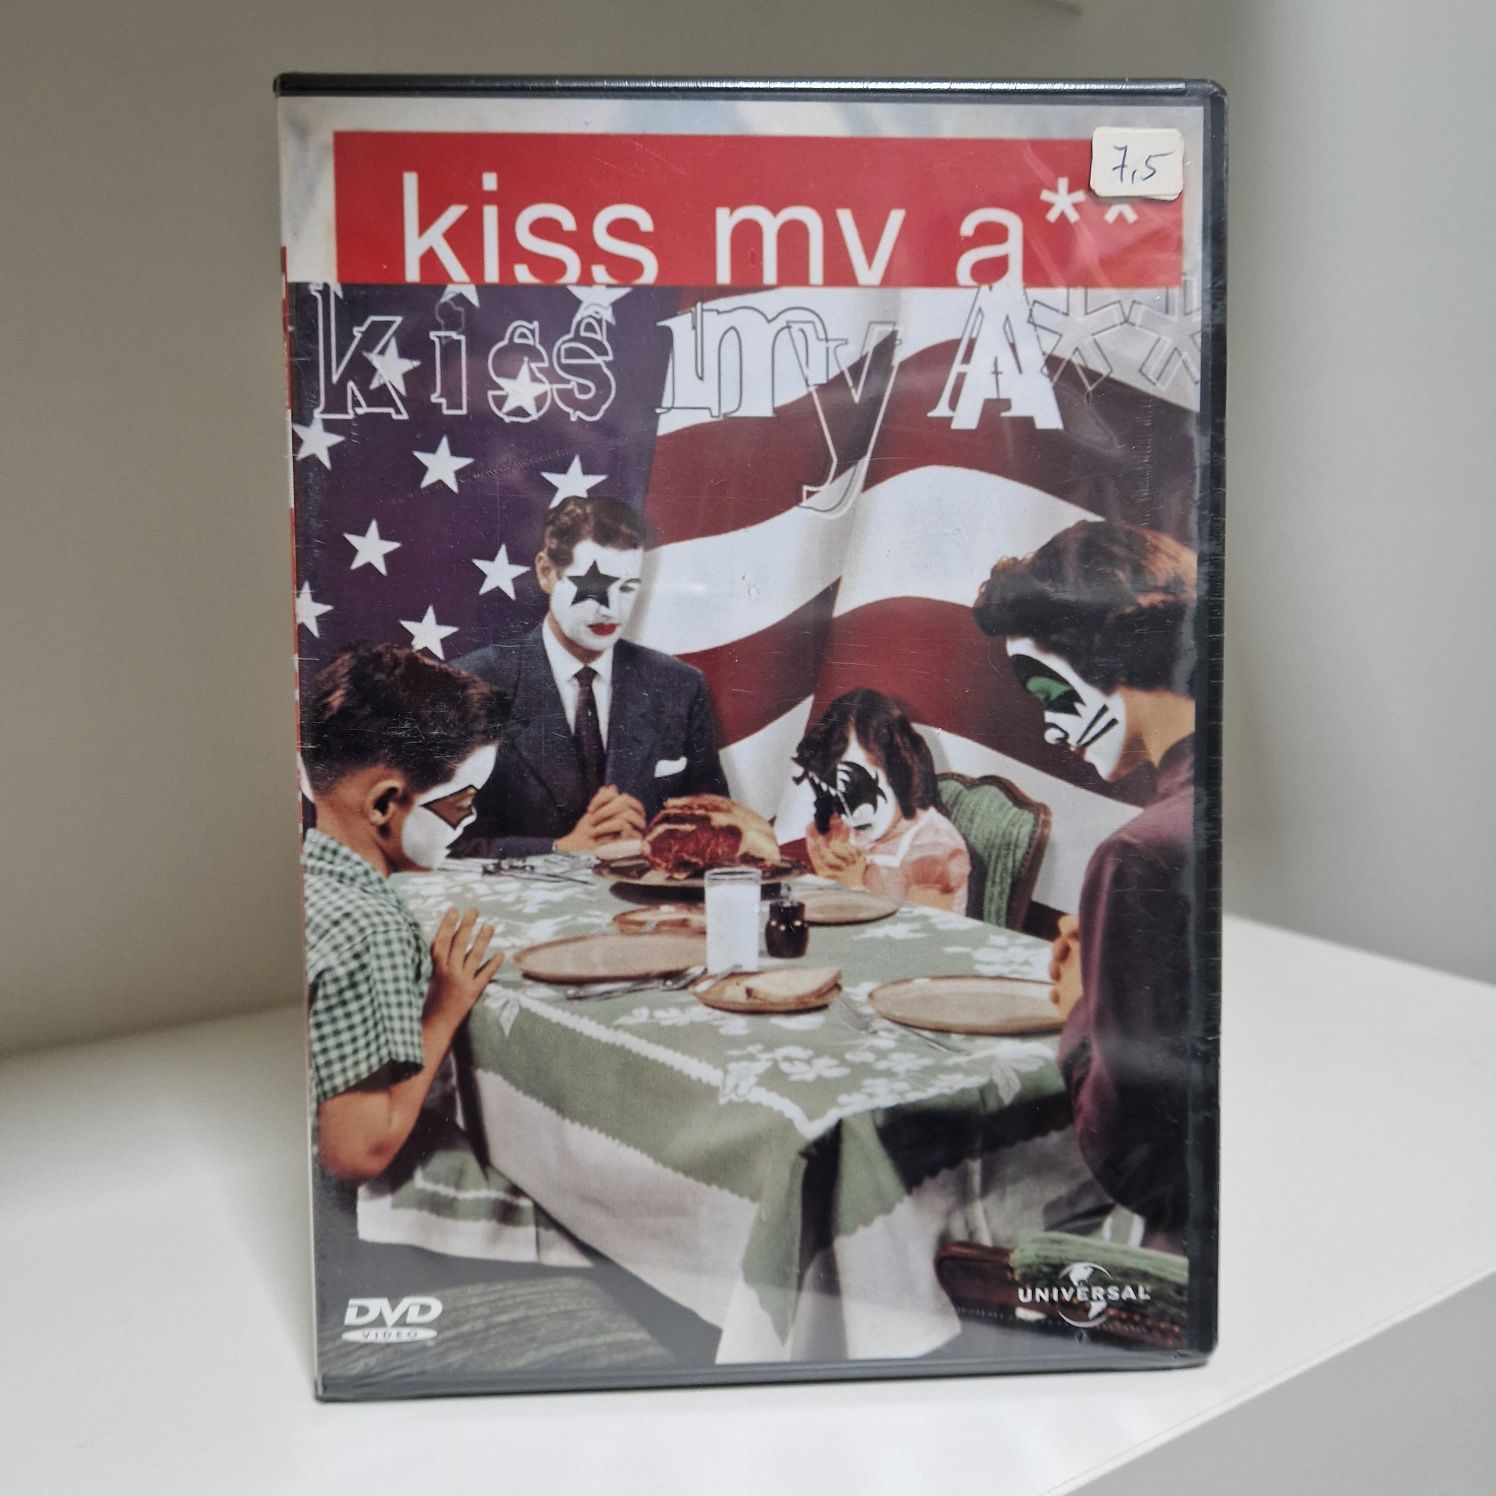 Kiss - Kiss My axx - DVD - artigo novo ainda no plástico original